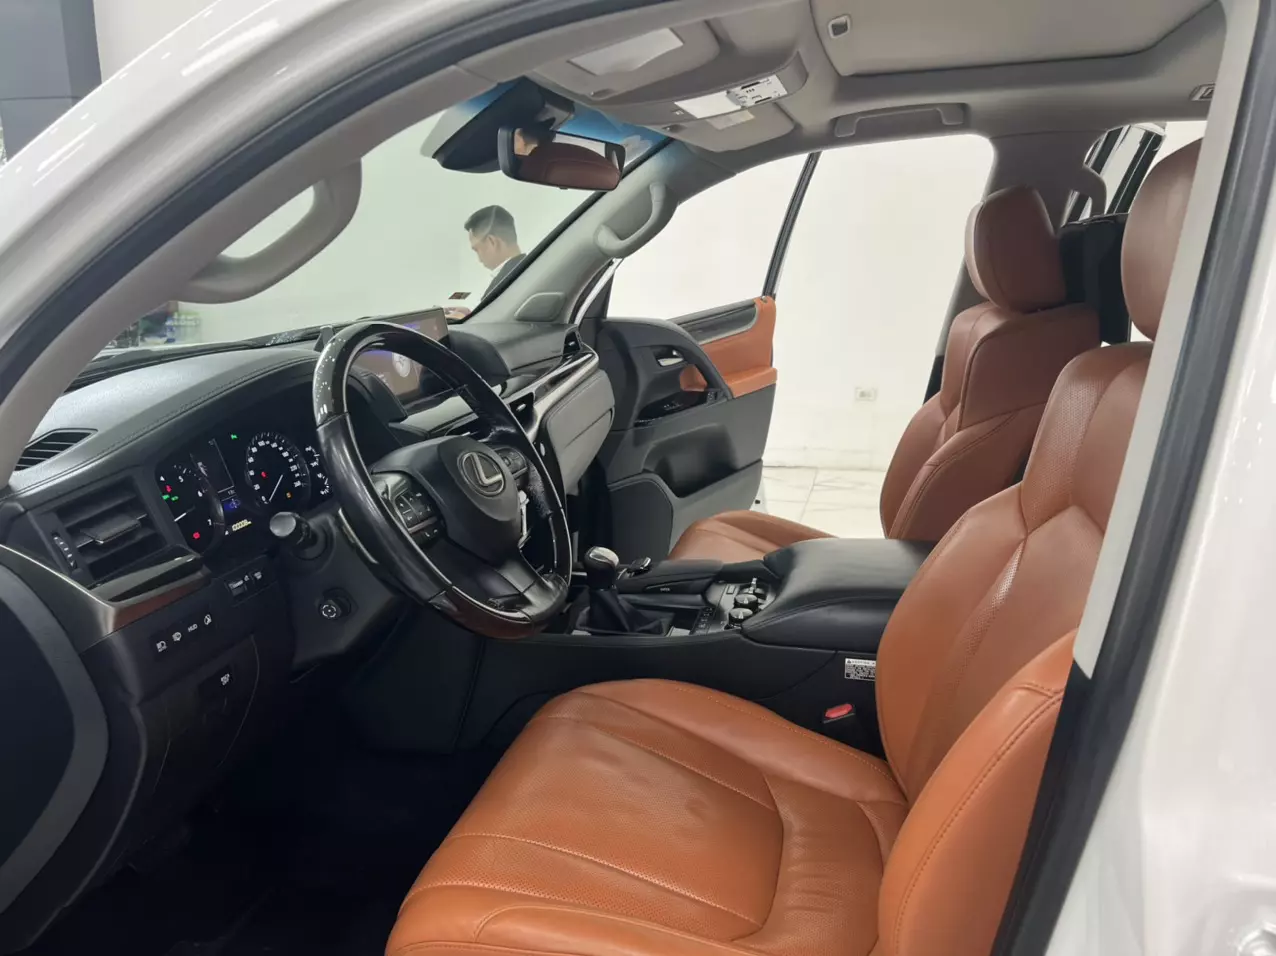 Bán Lexus LX570 Trung Đông sản xuất năm 2016 màu Trắng nội thất Nâu da bò, xe đăng ký tên cá nhân đi hơn 10v Km-3